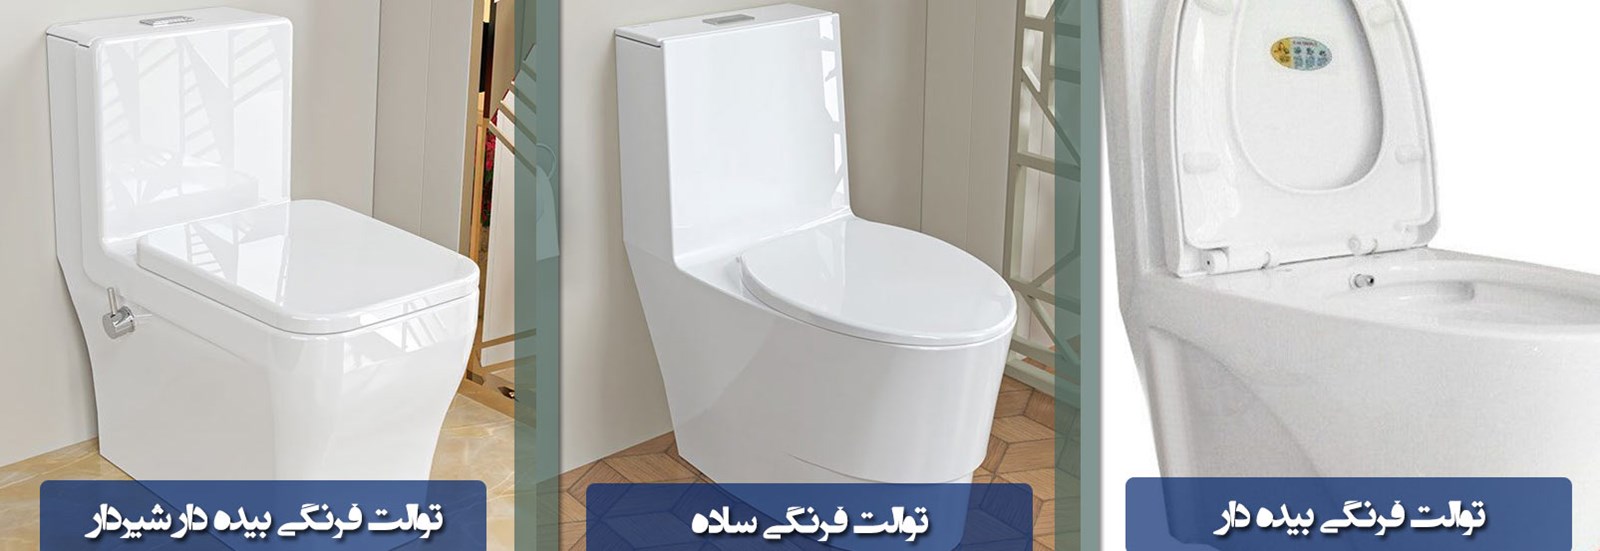 تفاوت توالت فرنگی بیده دار چینی کرد با مدل ساده